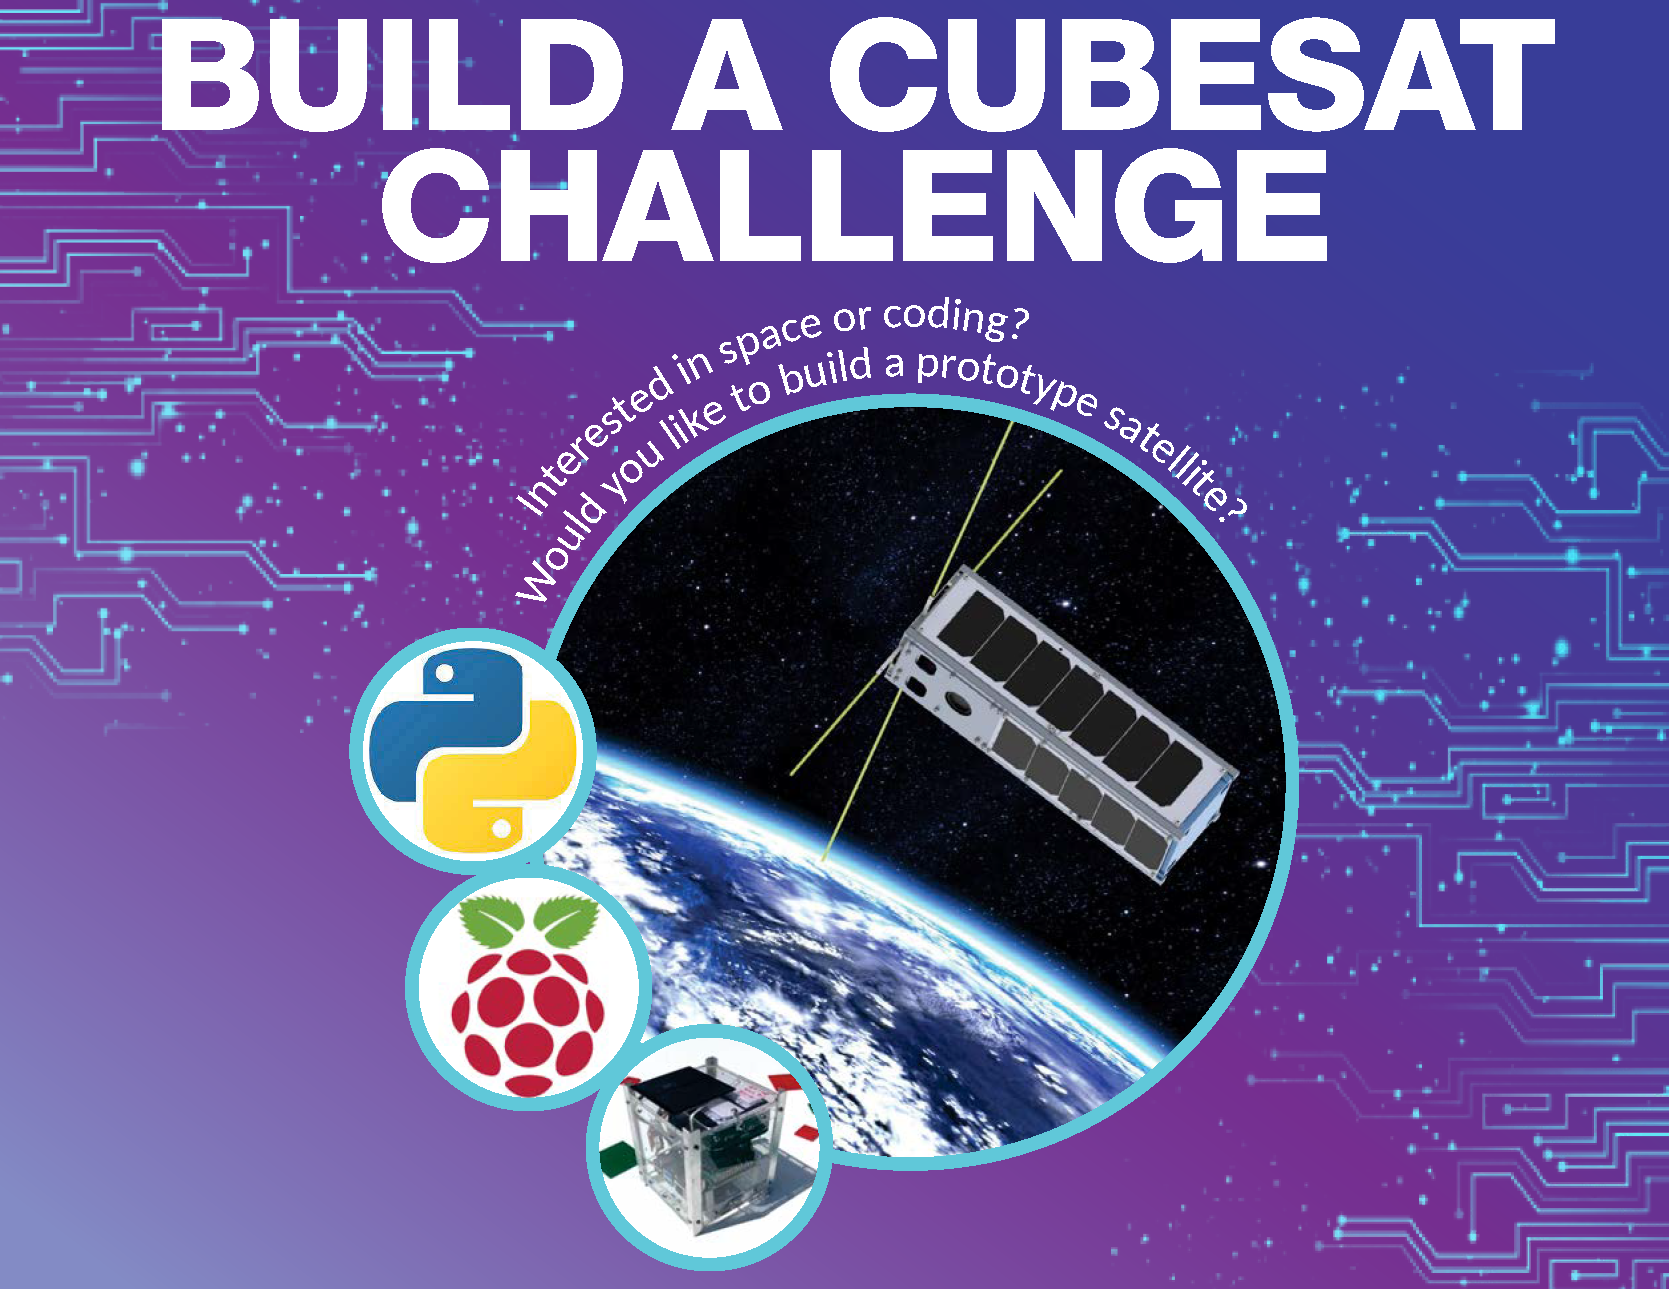 Build a CubeSat Poster